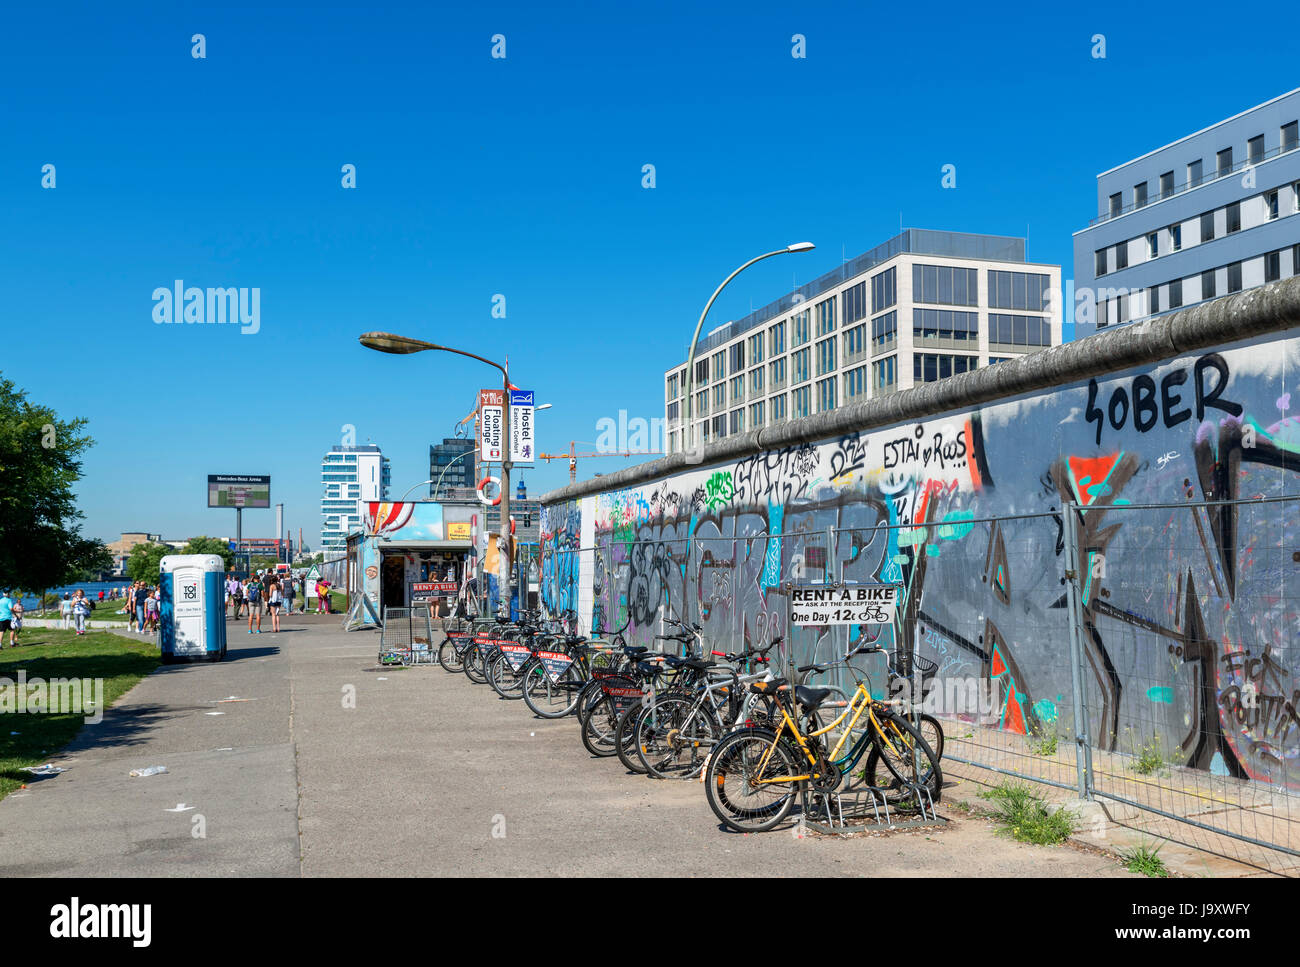 Verleih von einem Teil der Berliner Mauer an der East Side Gallery, Friedrichshain-Kreuzberg, Berlin, Deutschland Stockfoto